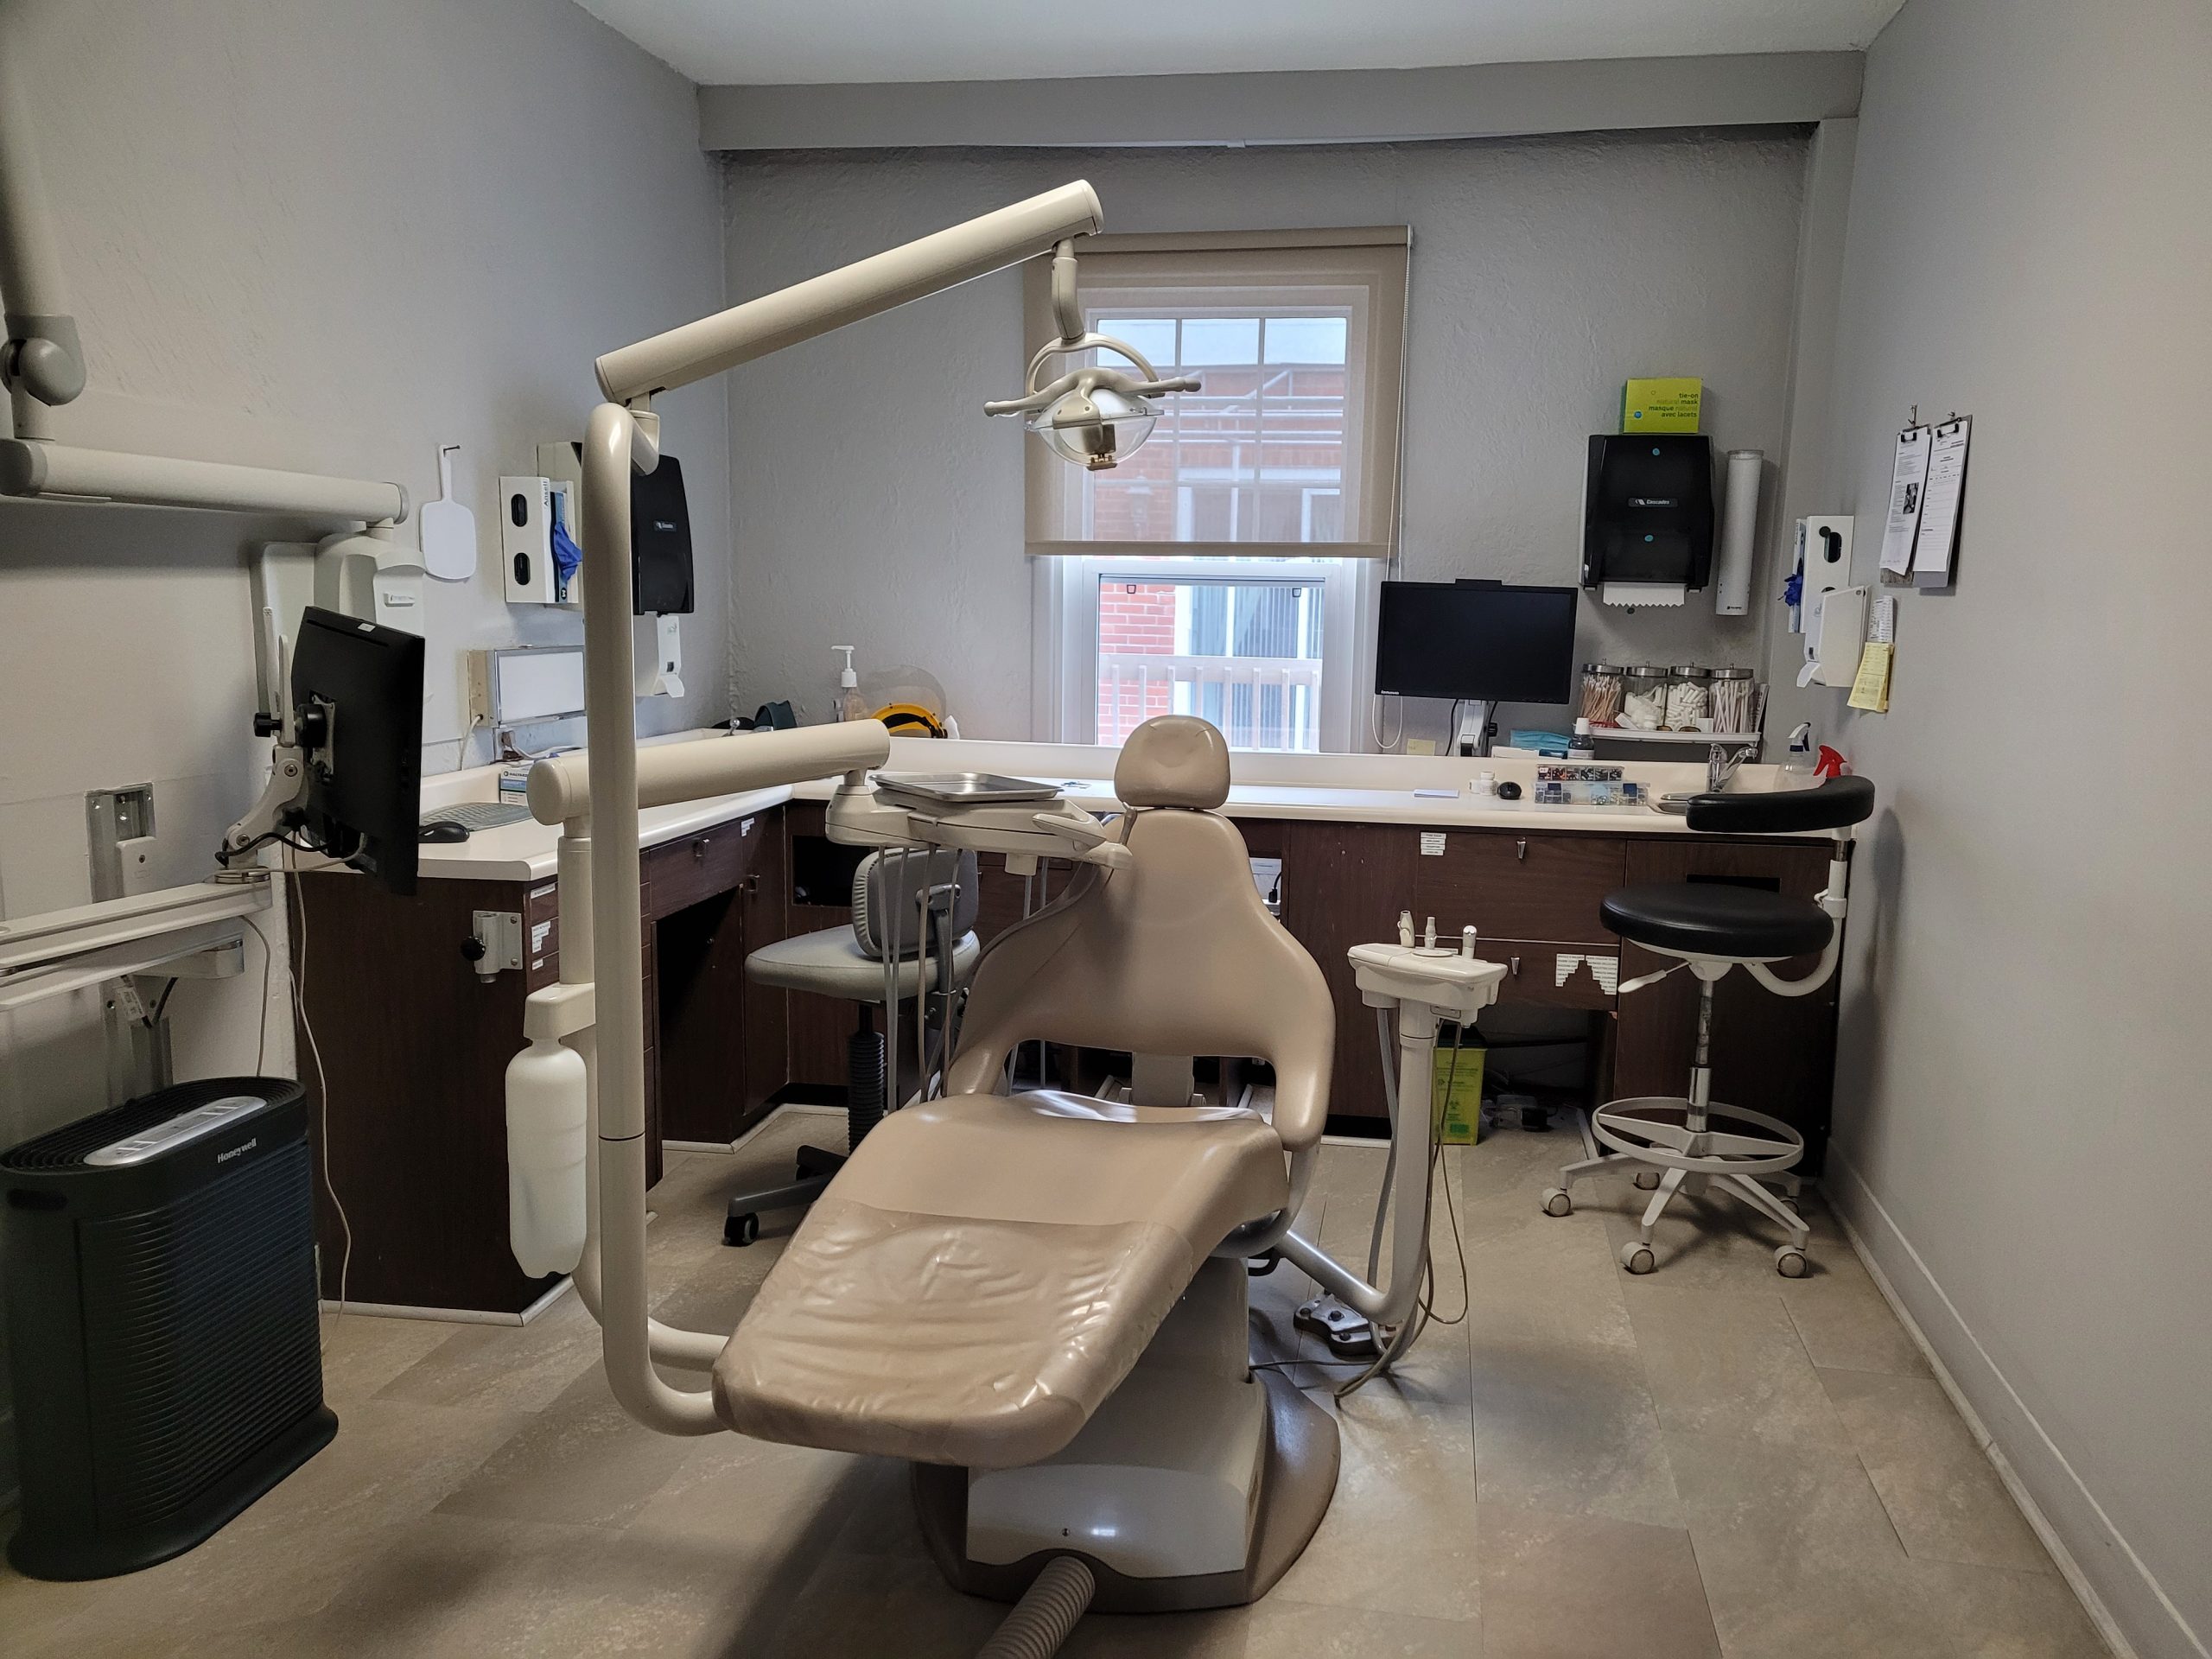 About Us Centre Dentaire Ville De Quebec Dentistes Quebec City Dental Center Dentist